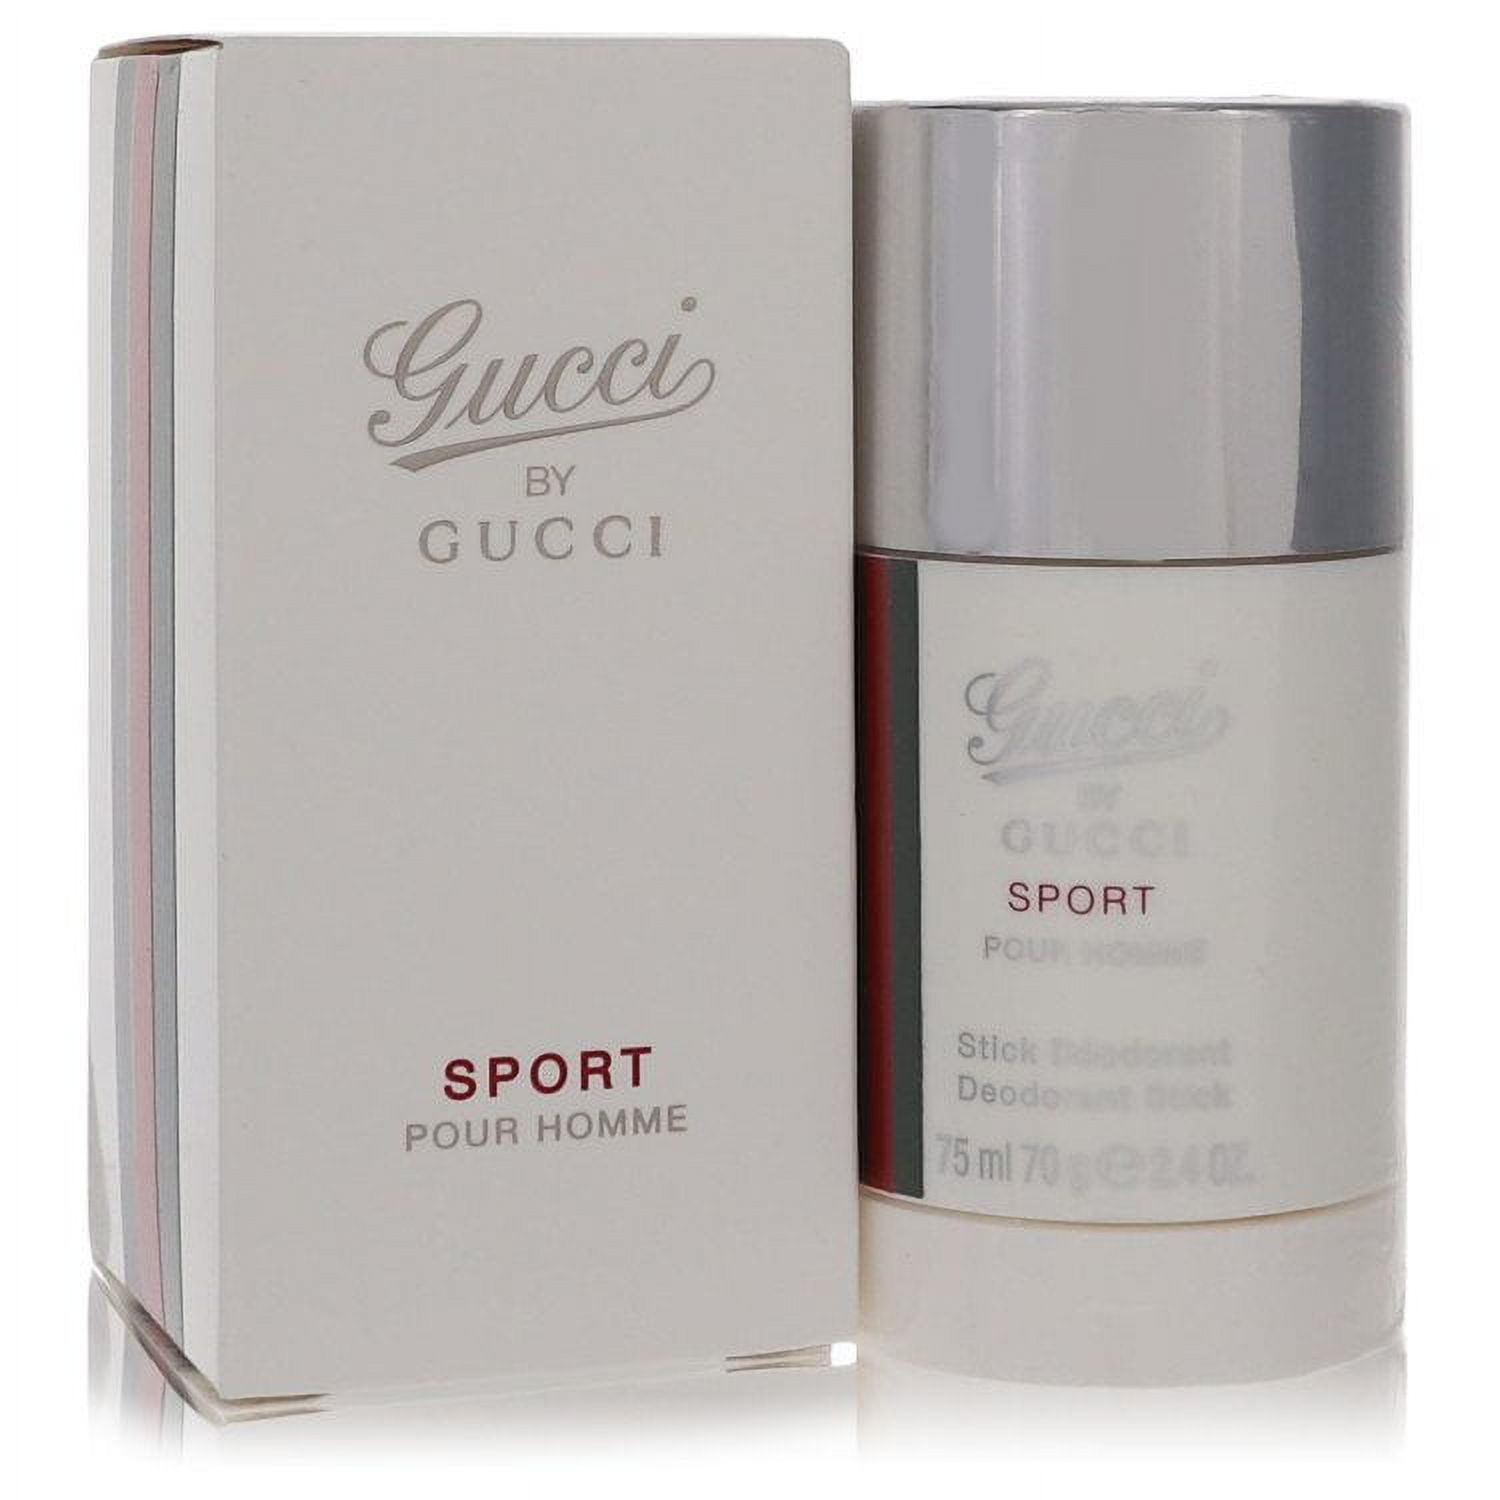 Pour homme sport. Gucci by Gucci Sport pour homme (Gucci). Gucci by Gucci Sport. Духи \Gucci by Gucci pour homme (Gucci). Gucci bi Gucci Sport pour homme.